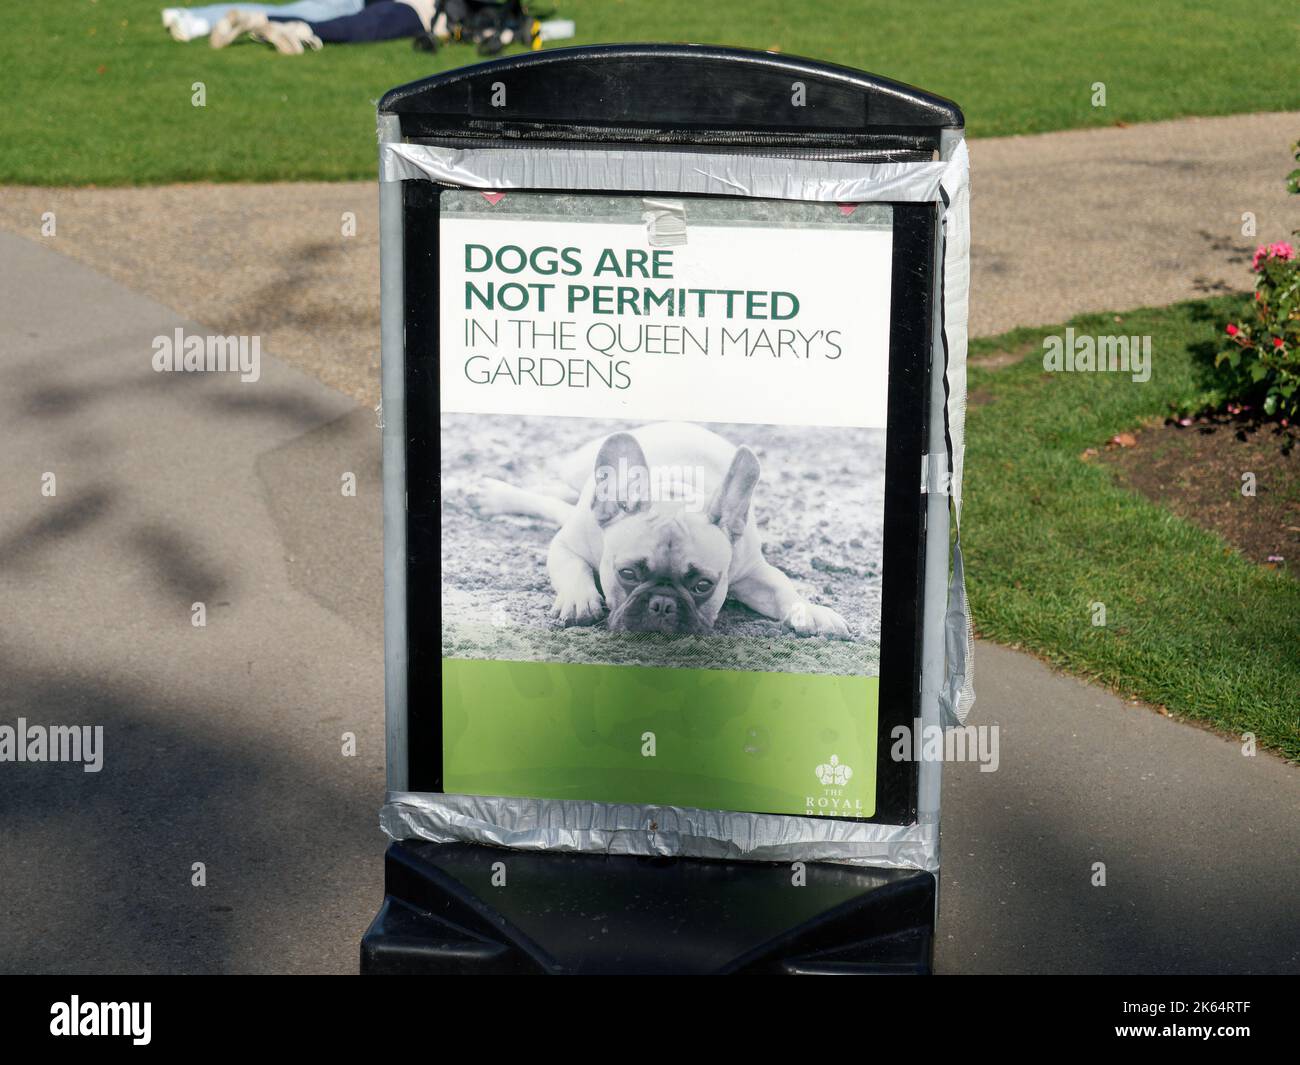 Un grand panneau indiquant que les chiens ne sont pas autorisés dans les jardins Queen Mary's Gardens dans le cercle intérieur du Regent's Park de Londres Banque D'Images